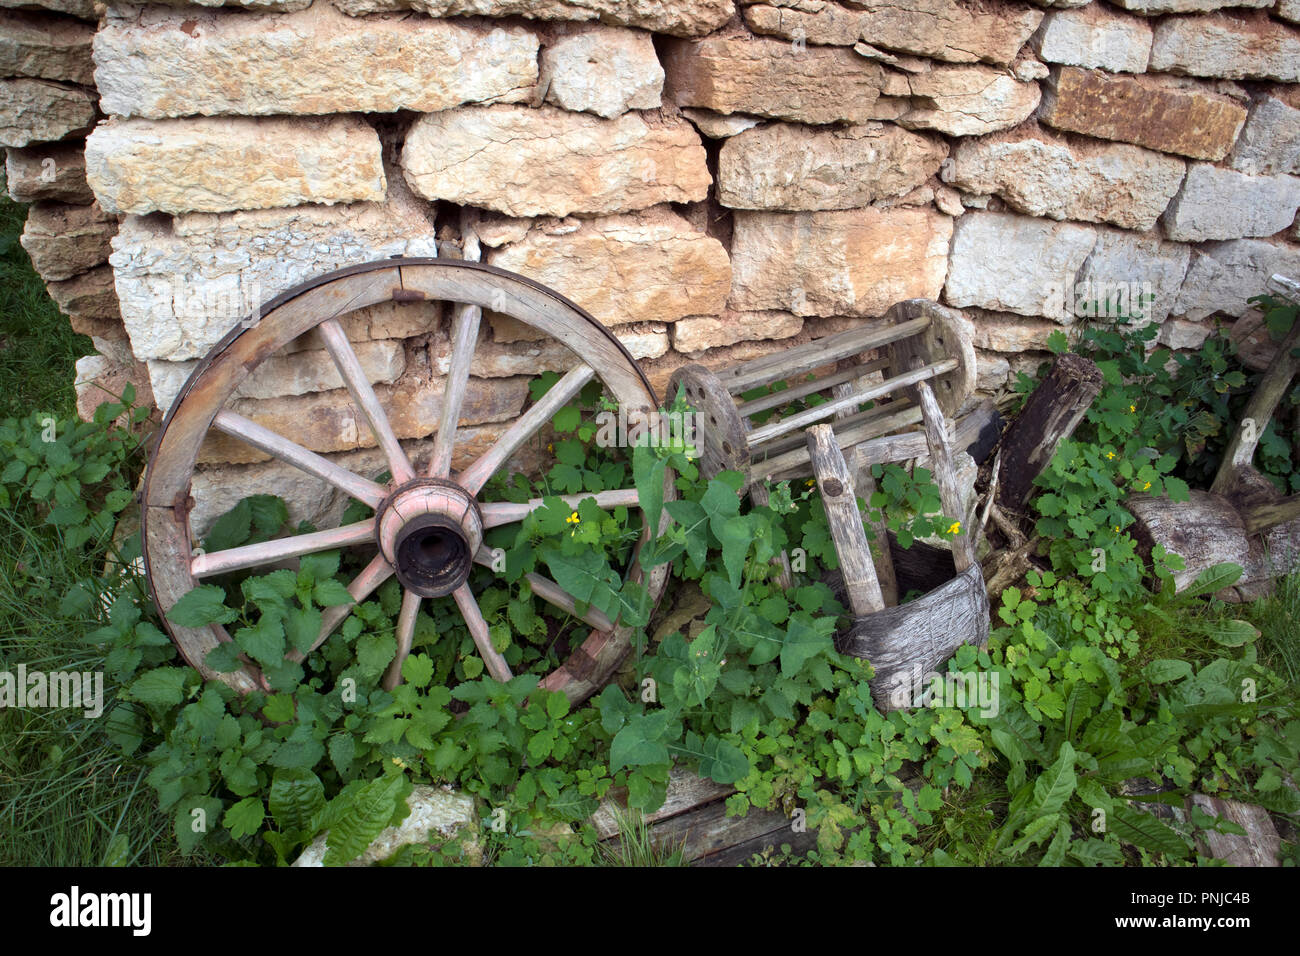 Open Air Museum di antiquariato cose contadina, ruota vecchia vicino al muro di mattoni Foto Stock